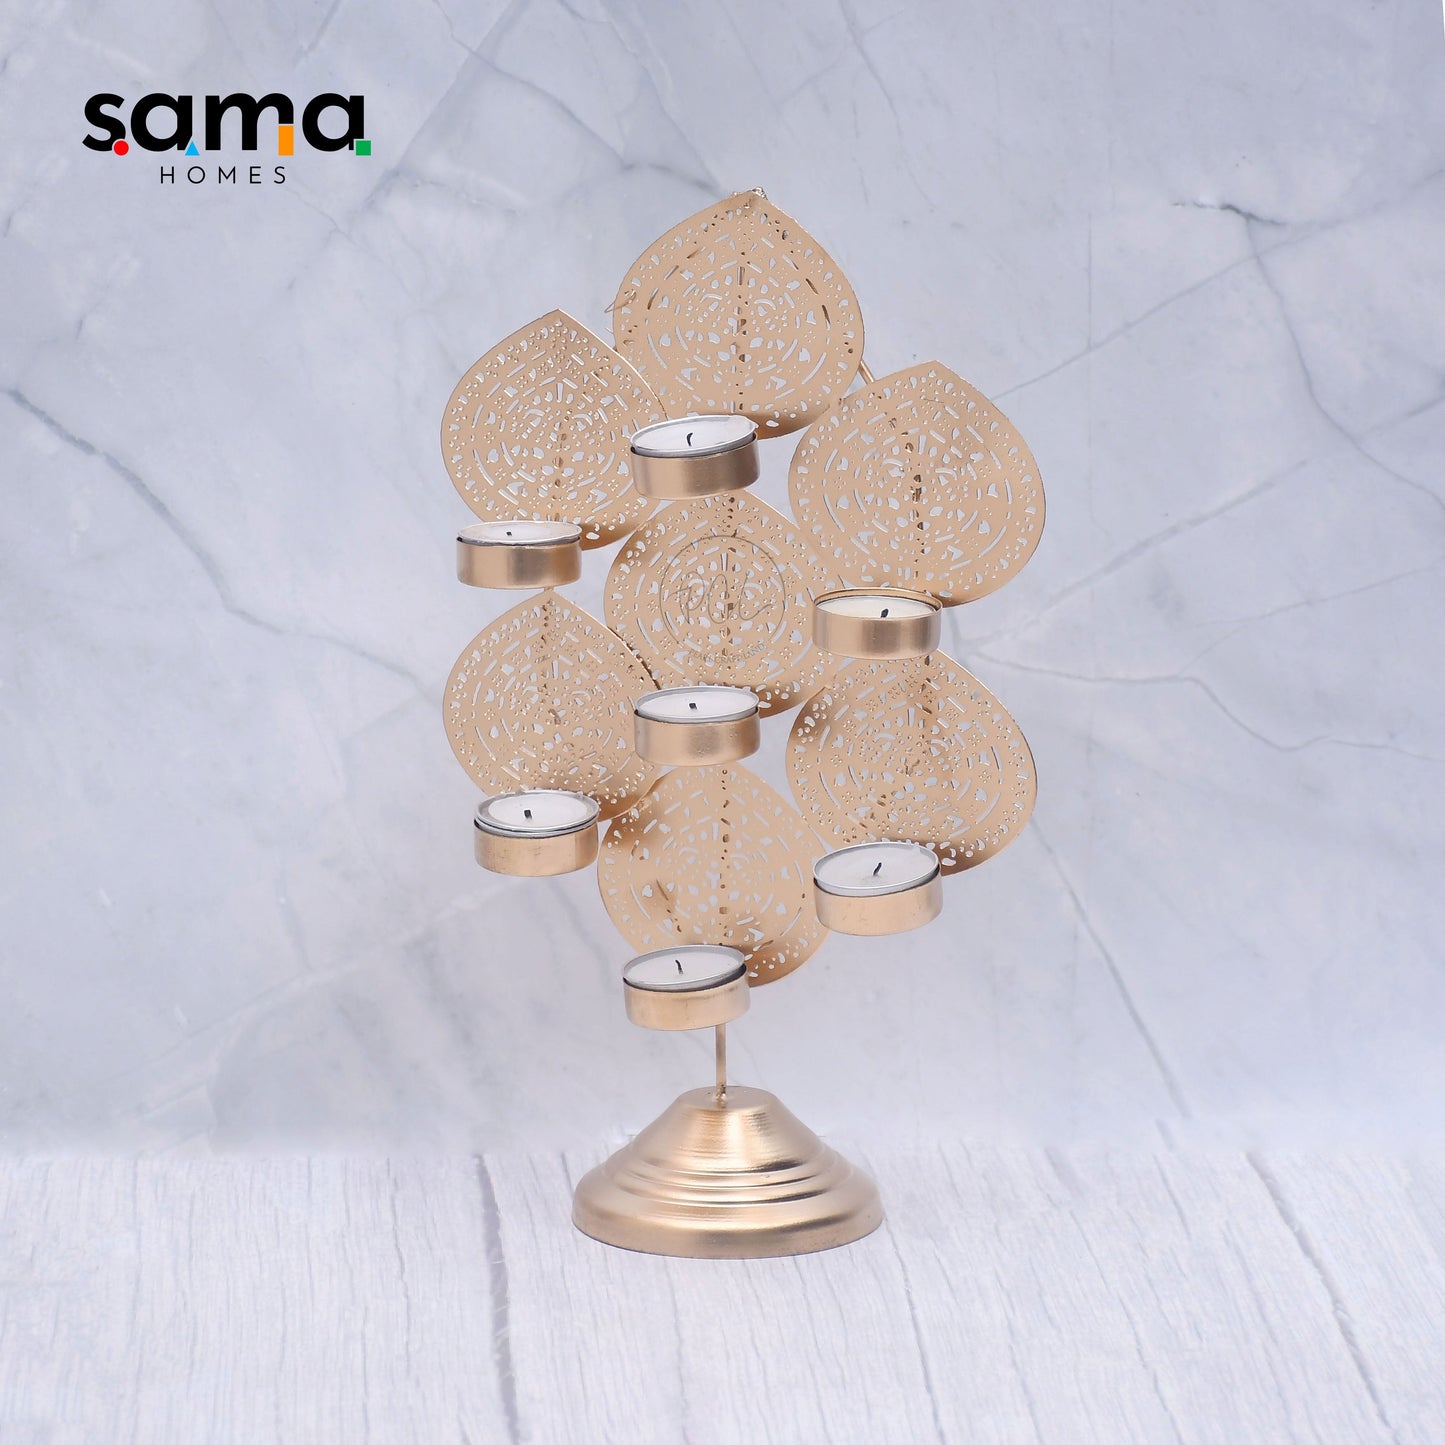 SAMA Homes - exclusive betel leaf design candle holder